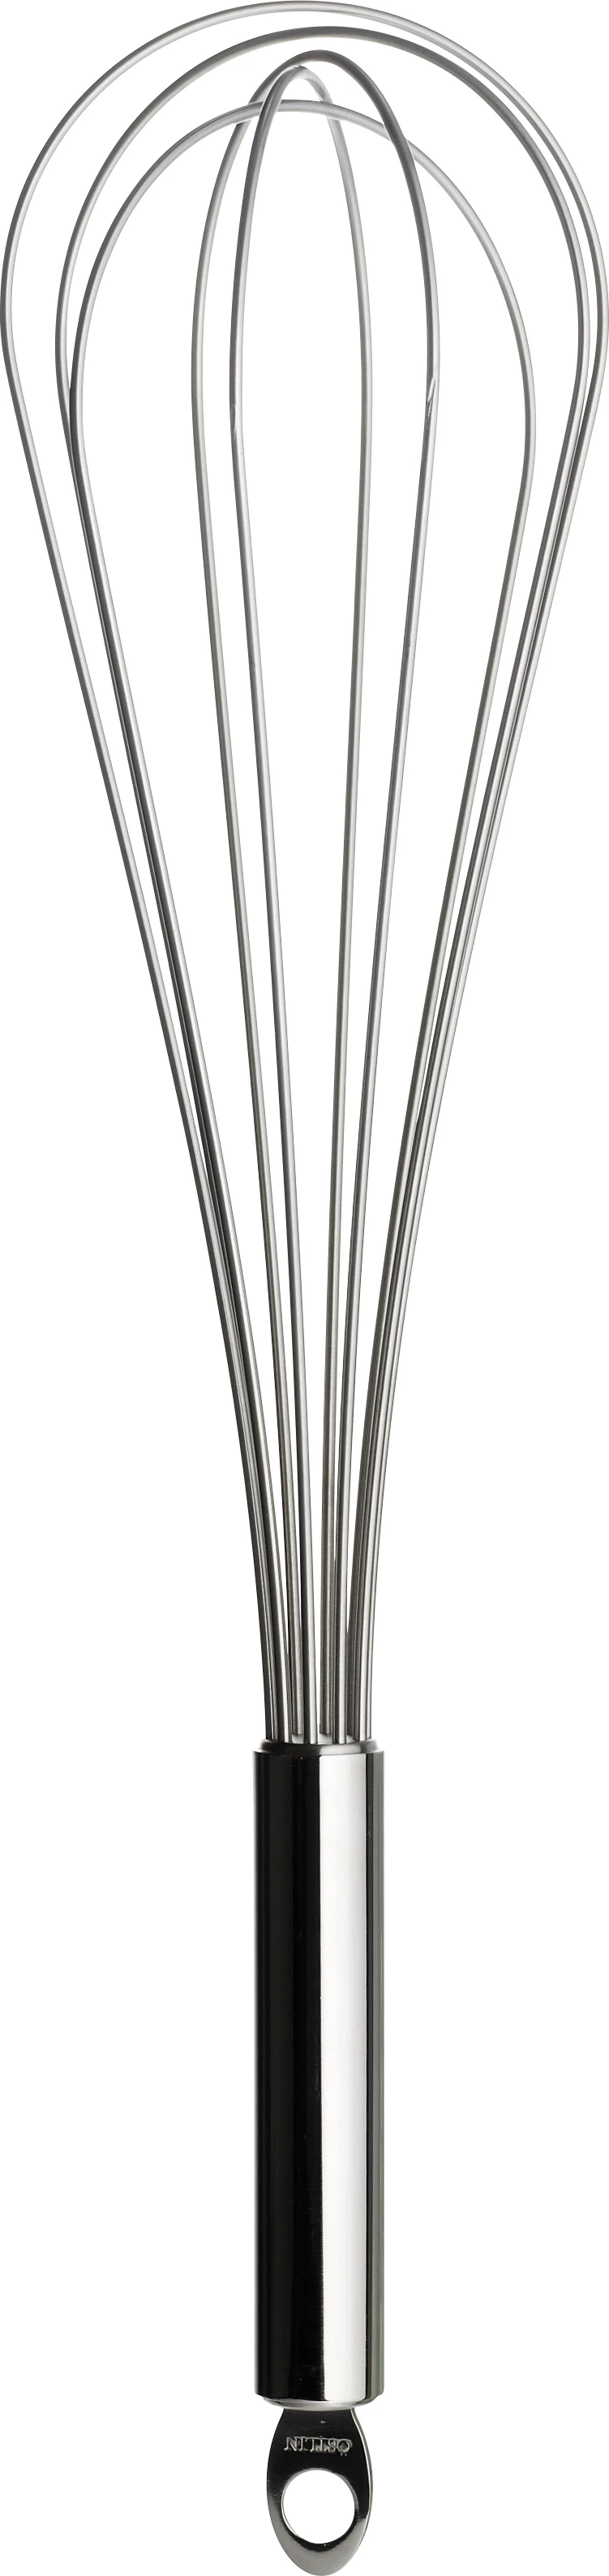 Piskeris med ophæng, rustfrit stål, 50 cm